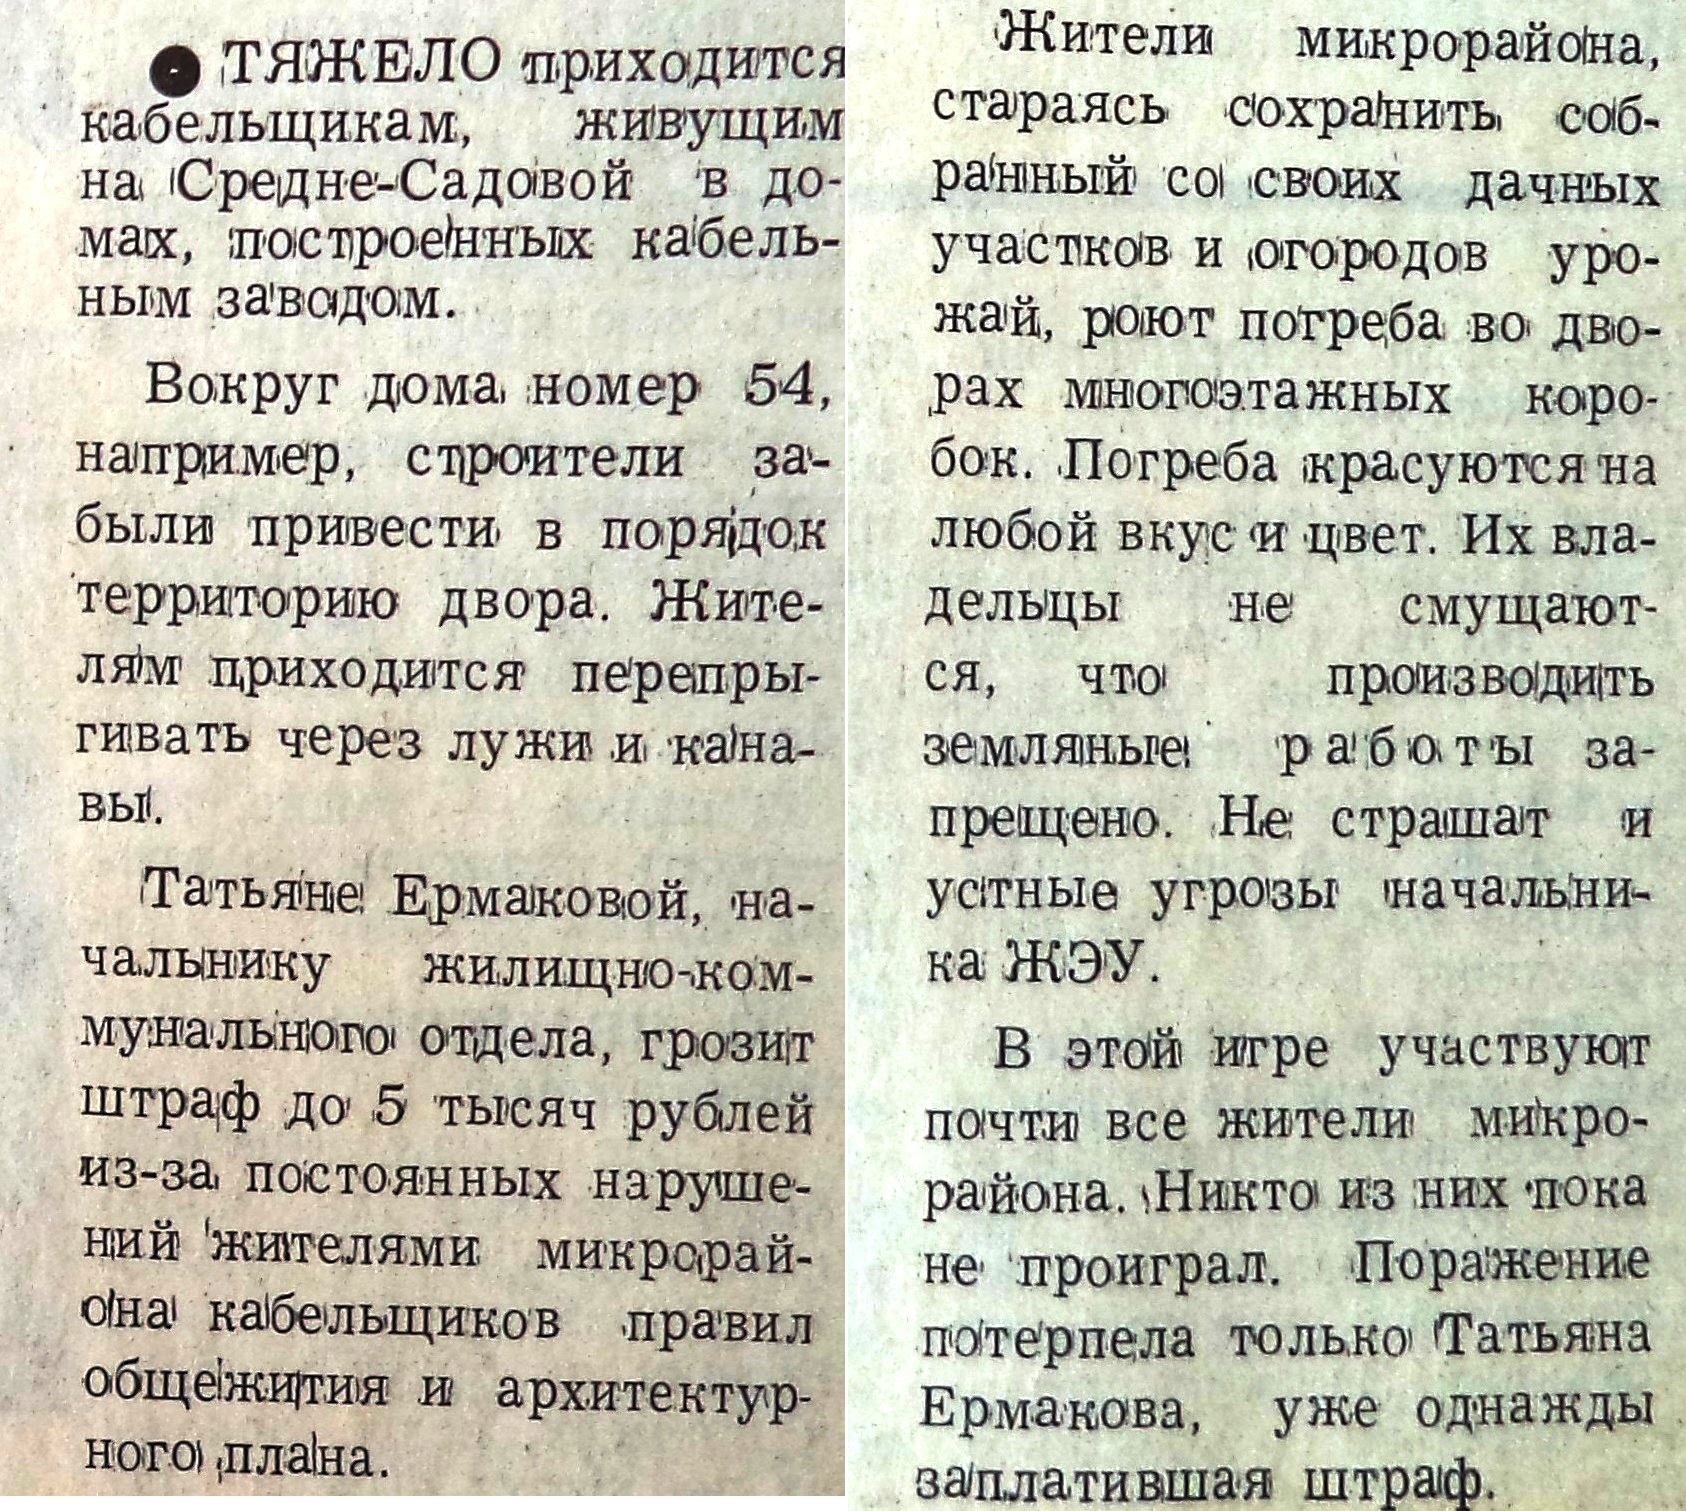 Средне-Садовая-ФОТО-48-Кабельщик-1992-2 октября